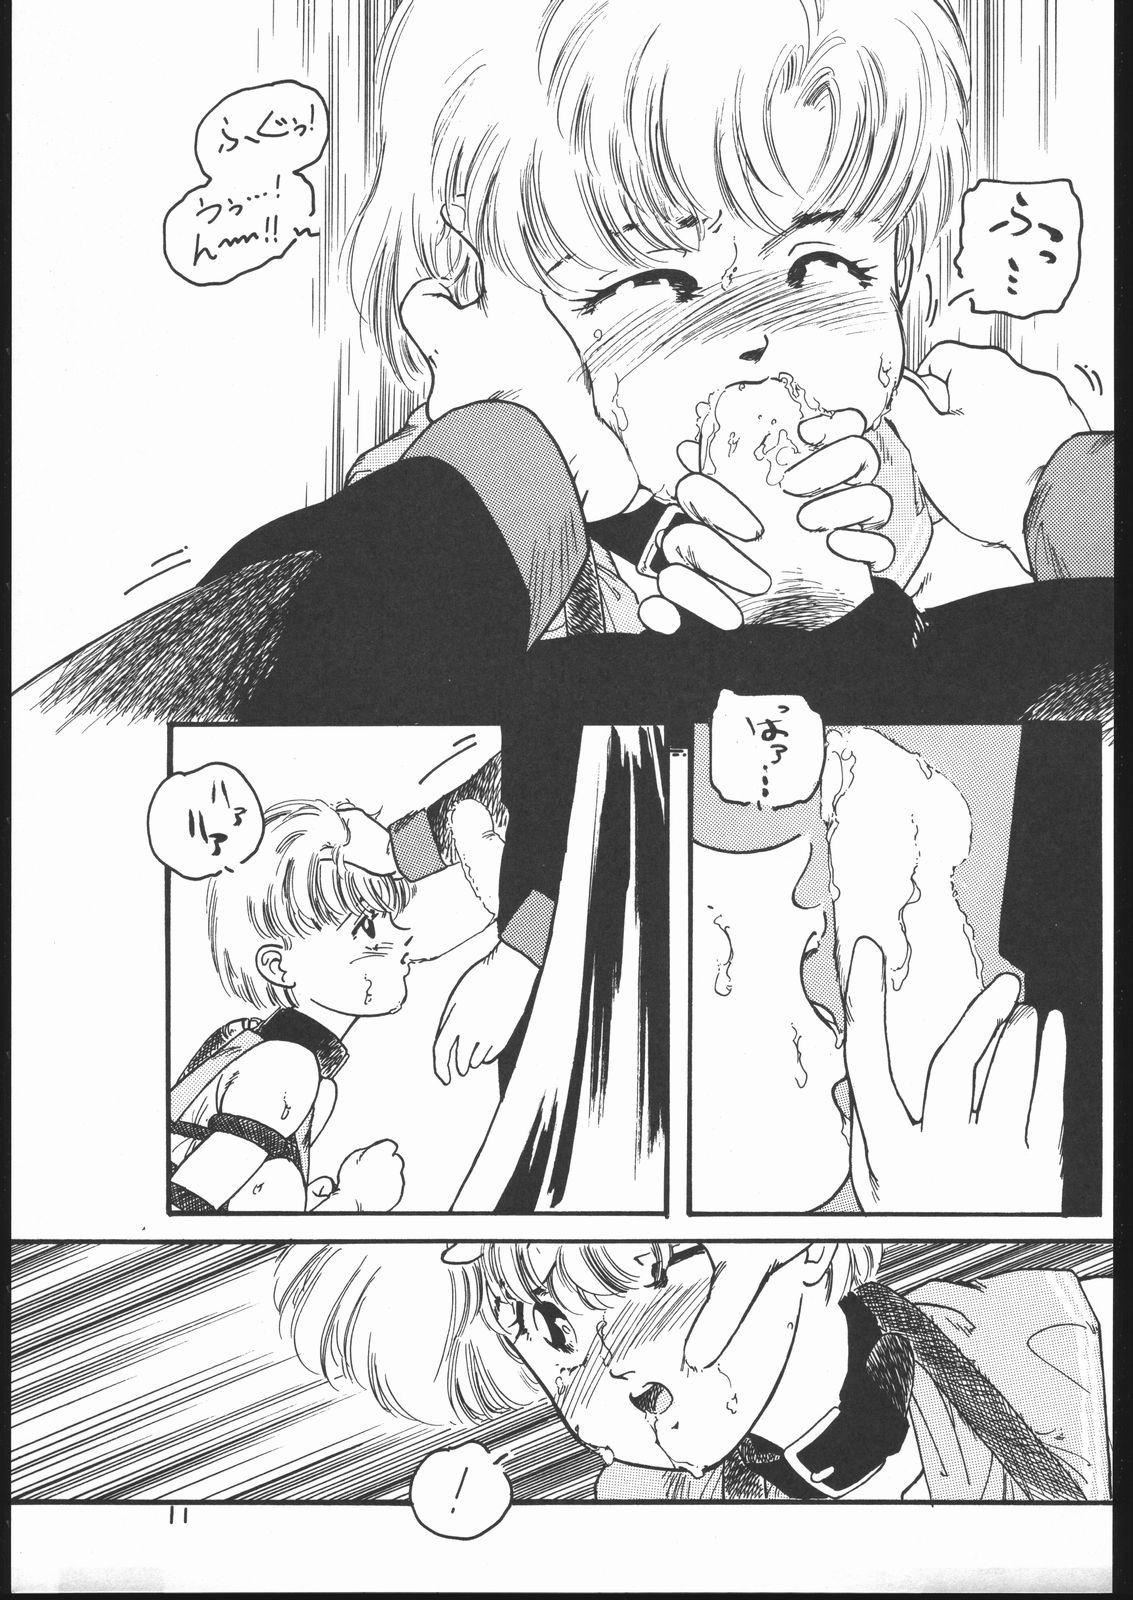 Ducha Gekkou Endymion 2 - Sailor moon 18yo - Page 10